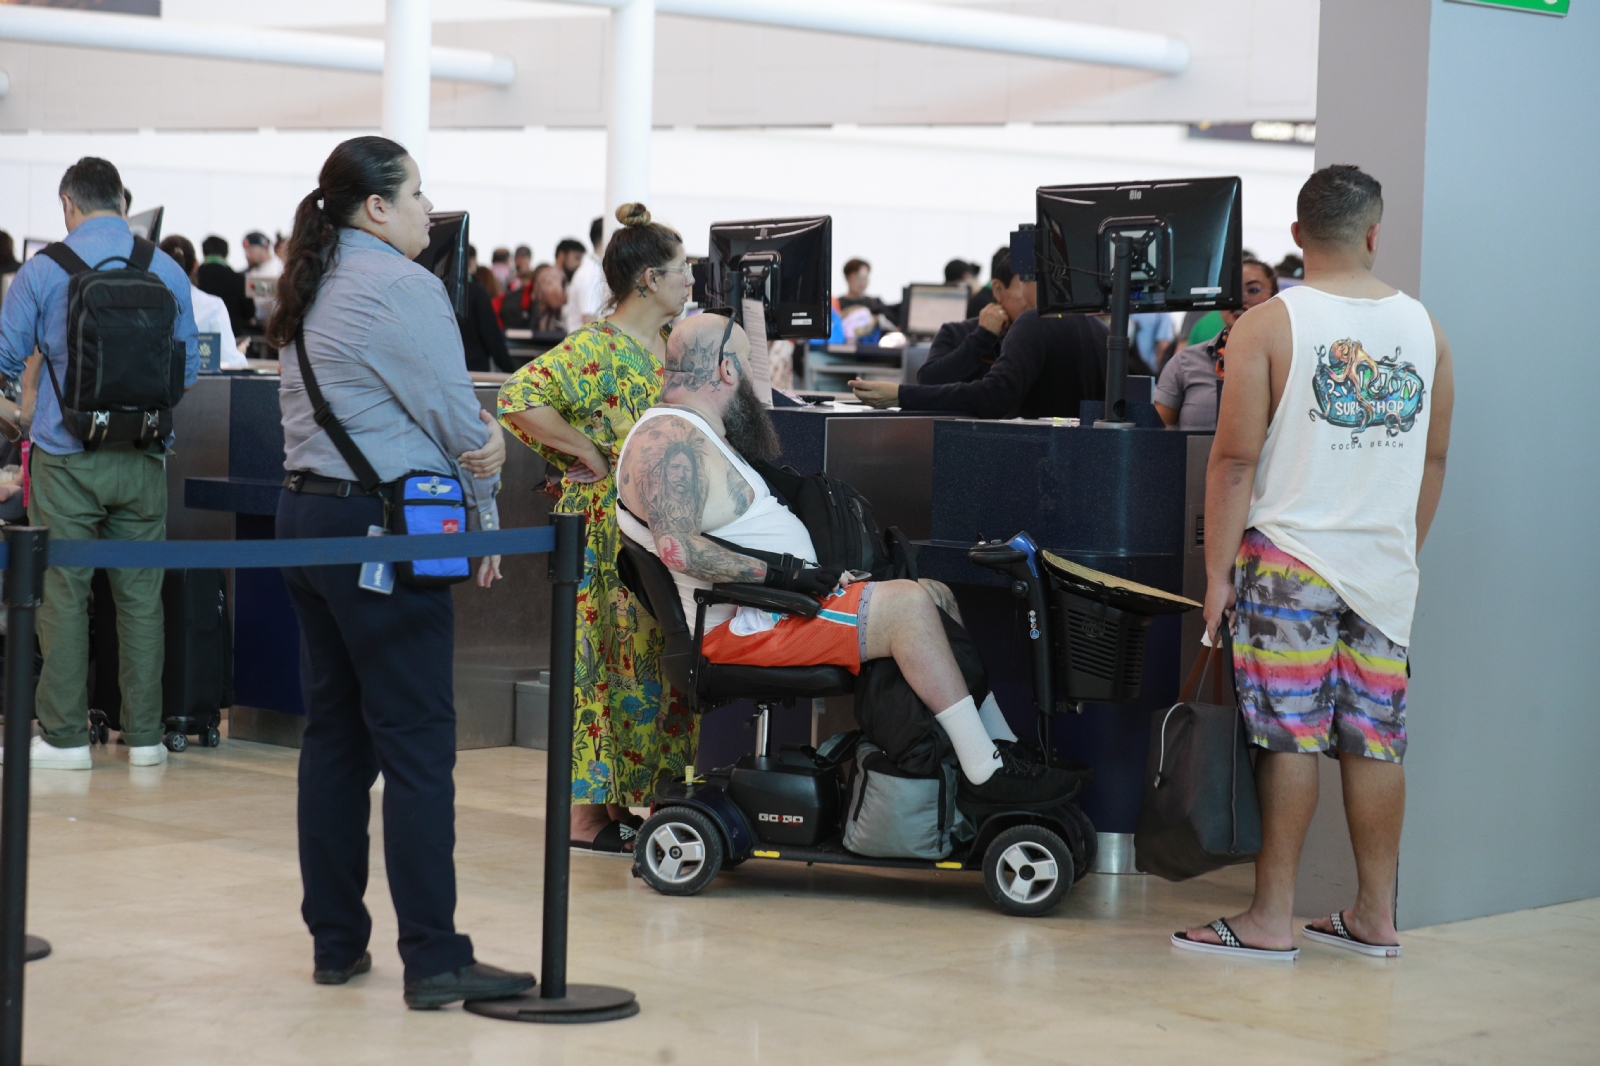 Aeropuerto de Cancún, accesible para personas con discapacidad motriz